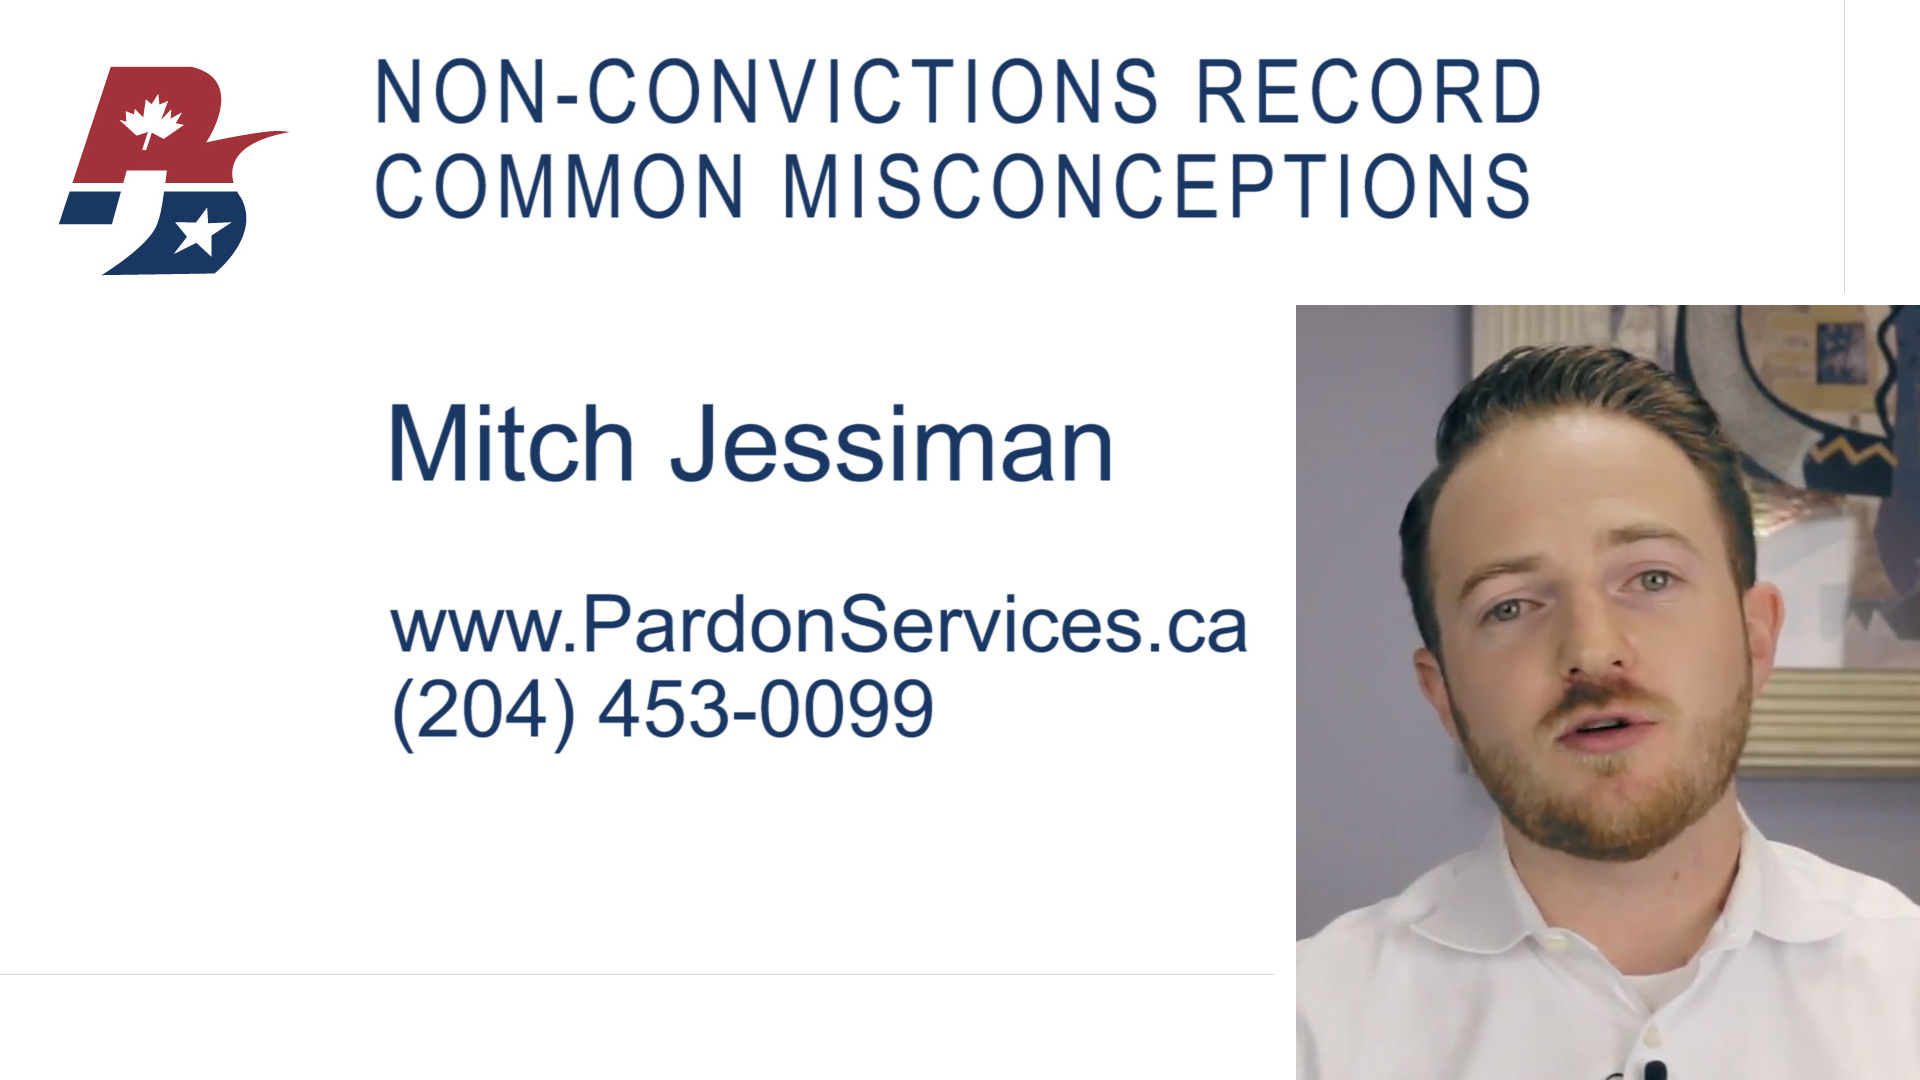 Non-Convictions Record - Common Misconceptions